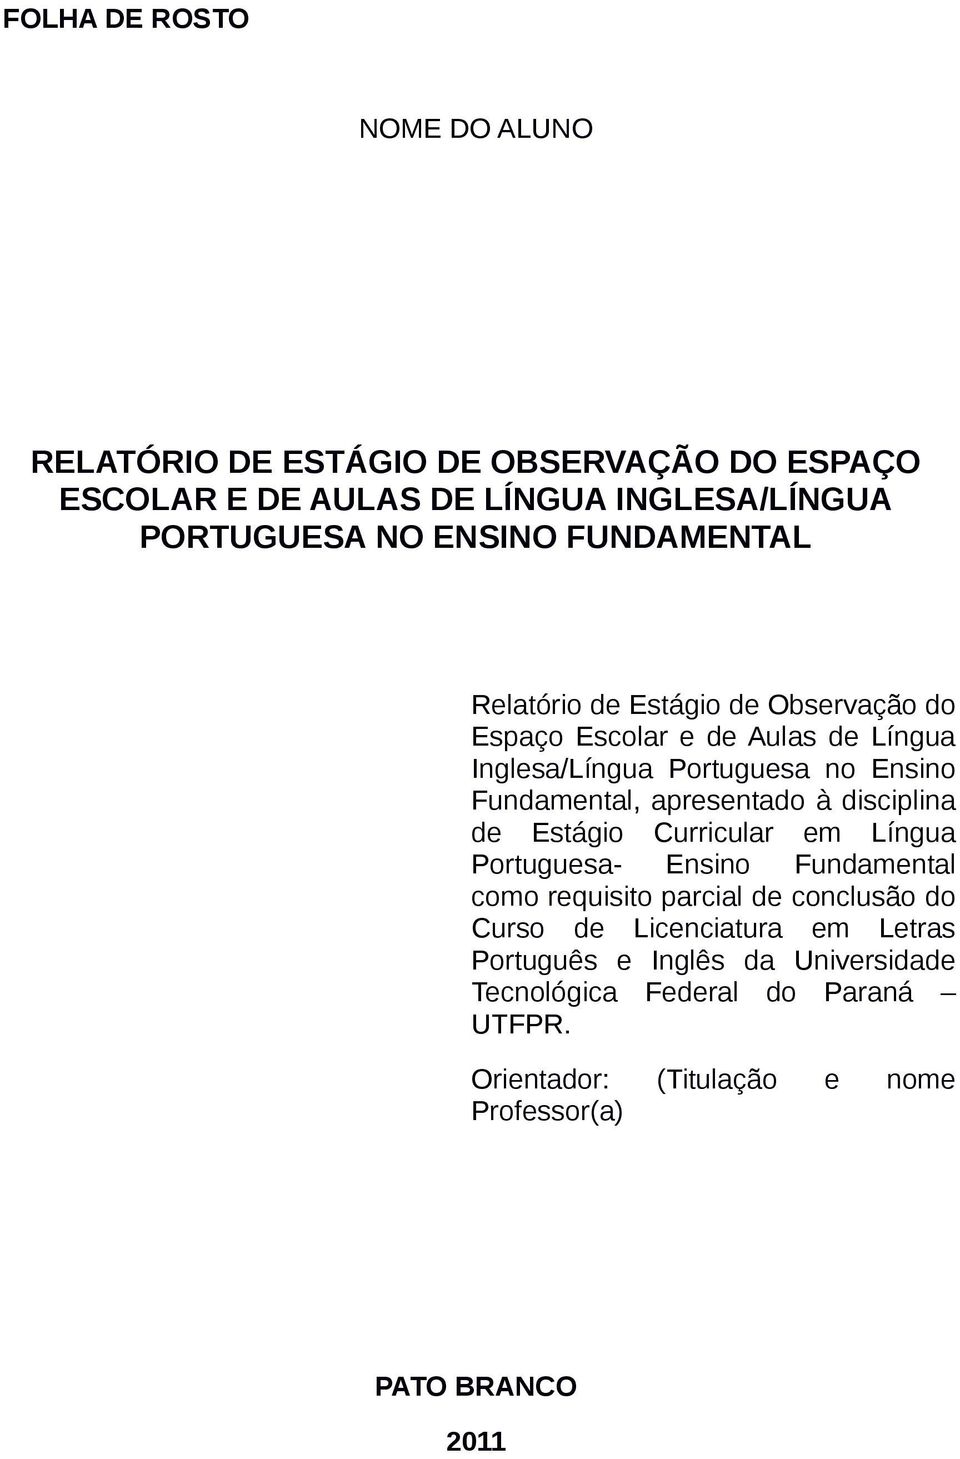 apresentado à disciplina de Estágio Curricular em Língua Portuguesa- Ensino Fundamental como requisito parcial de conclusão do Curso de